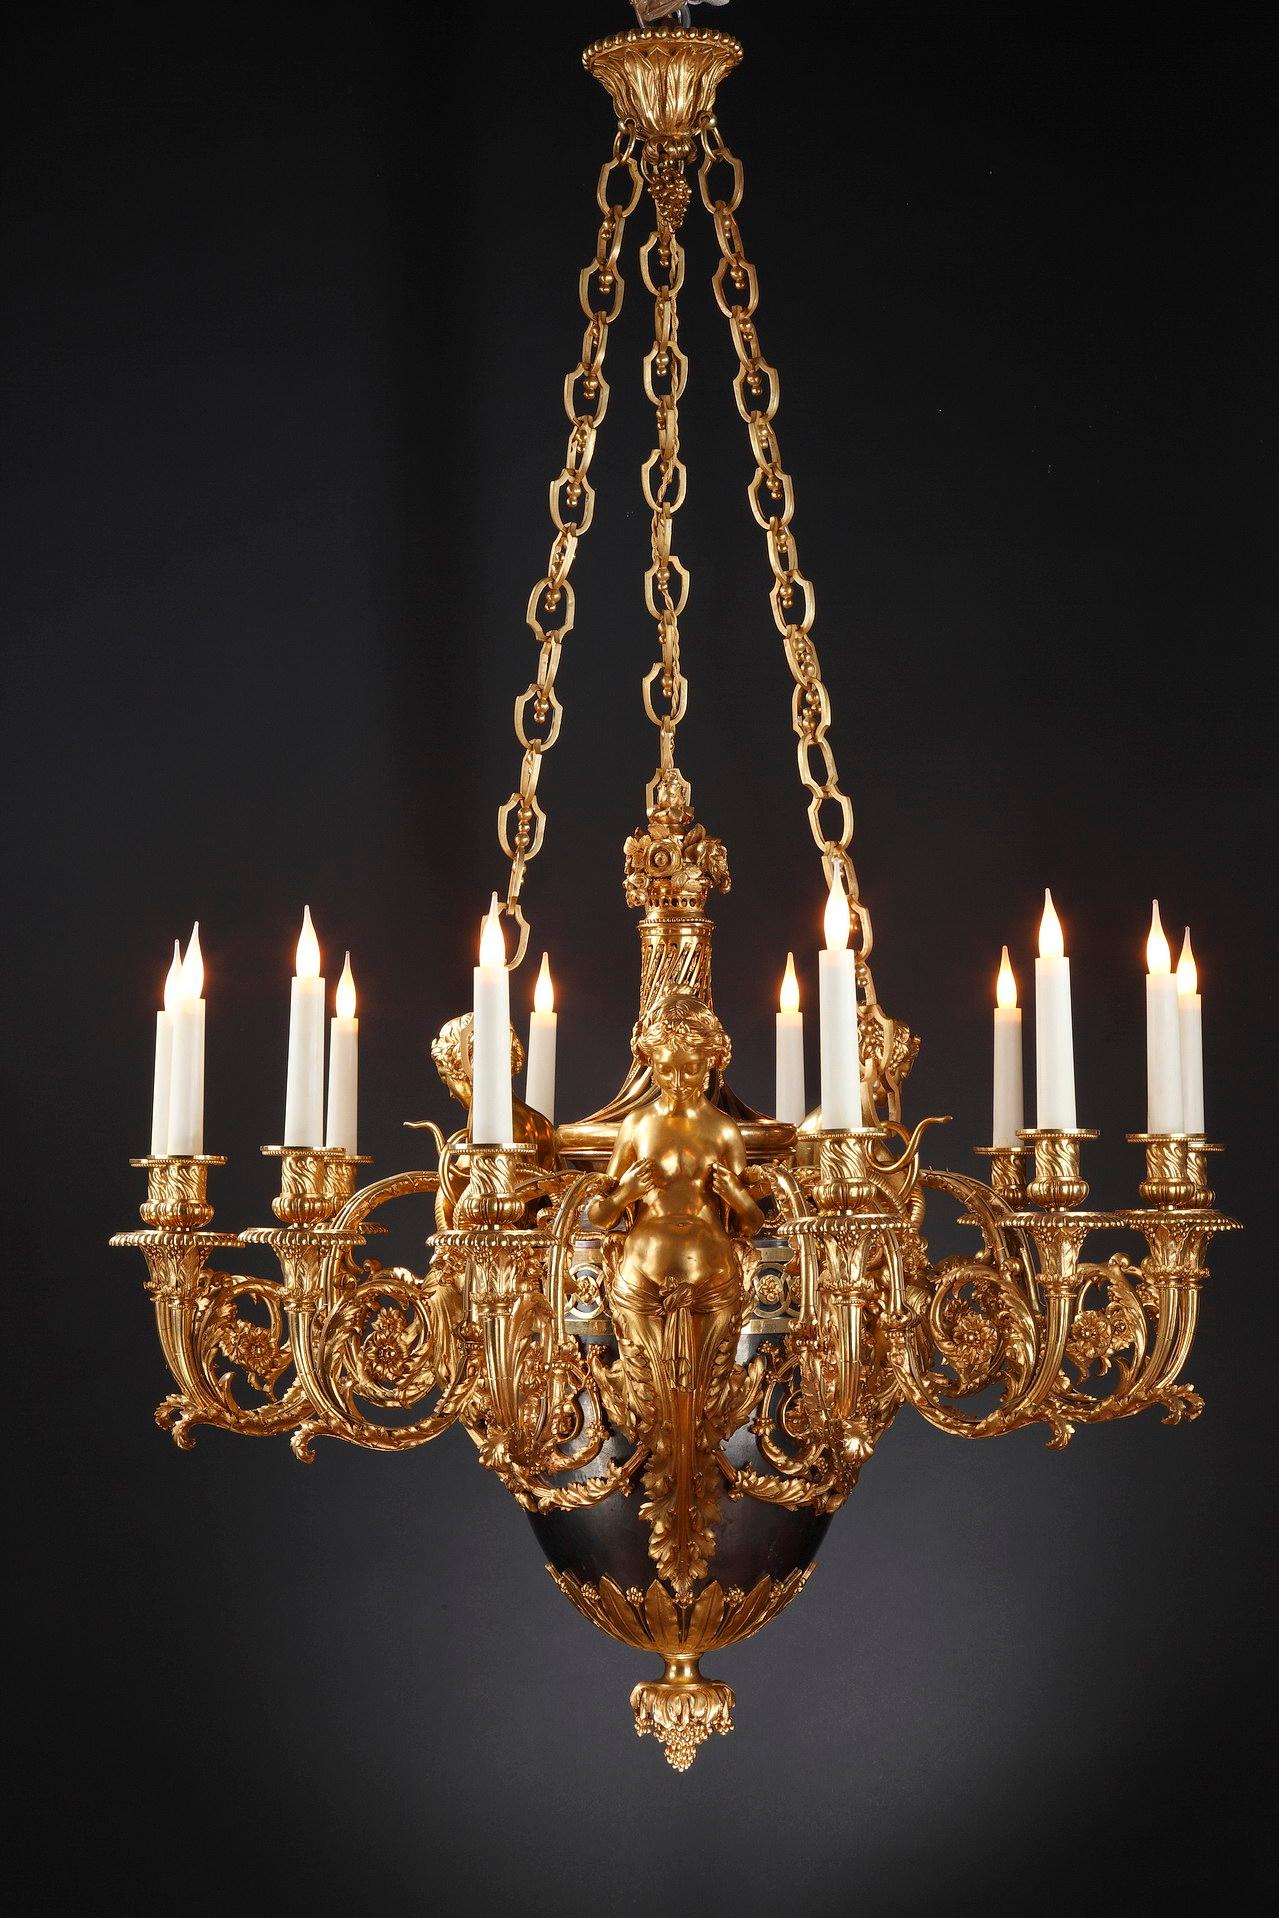 Porter la marque BY (pour A.E.) Beurdeley)
Magnifique lustre en bronze ciselé, doré et patiné, à douze lumières. Le fût est constitué d'un vase de forme ovoïde en bronze patiné bleui 